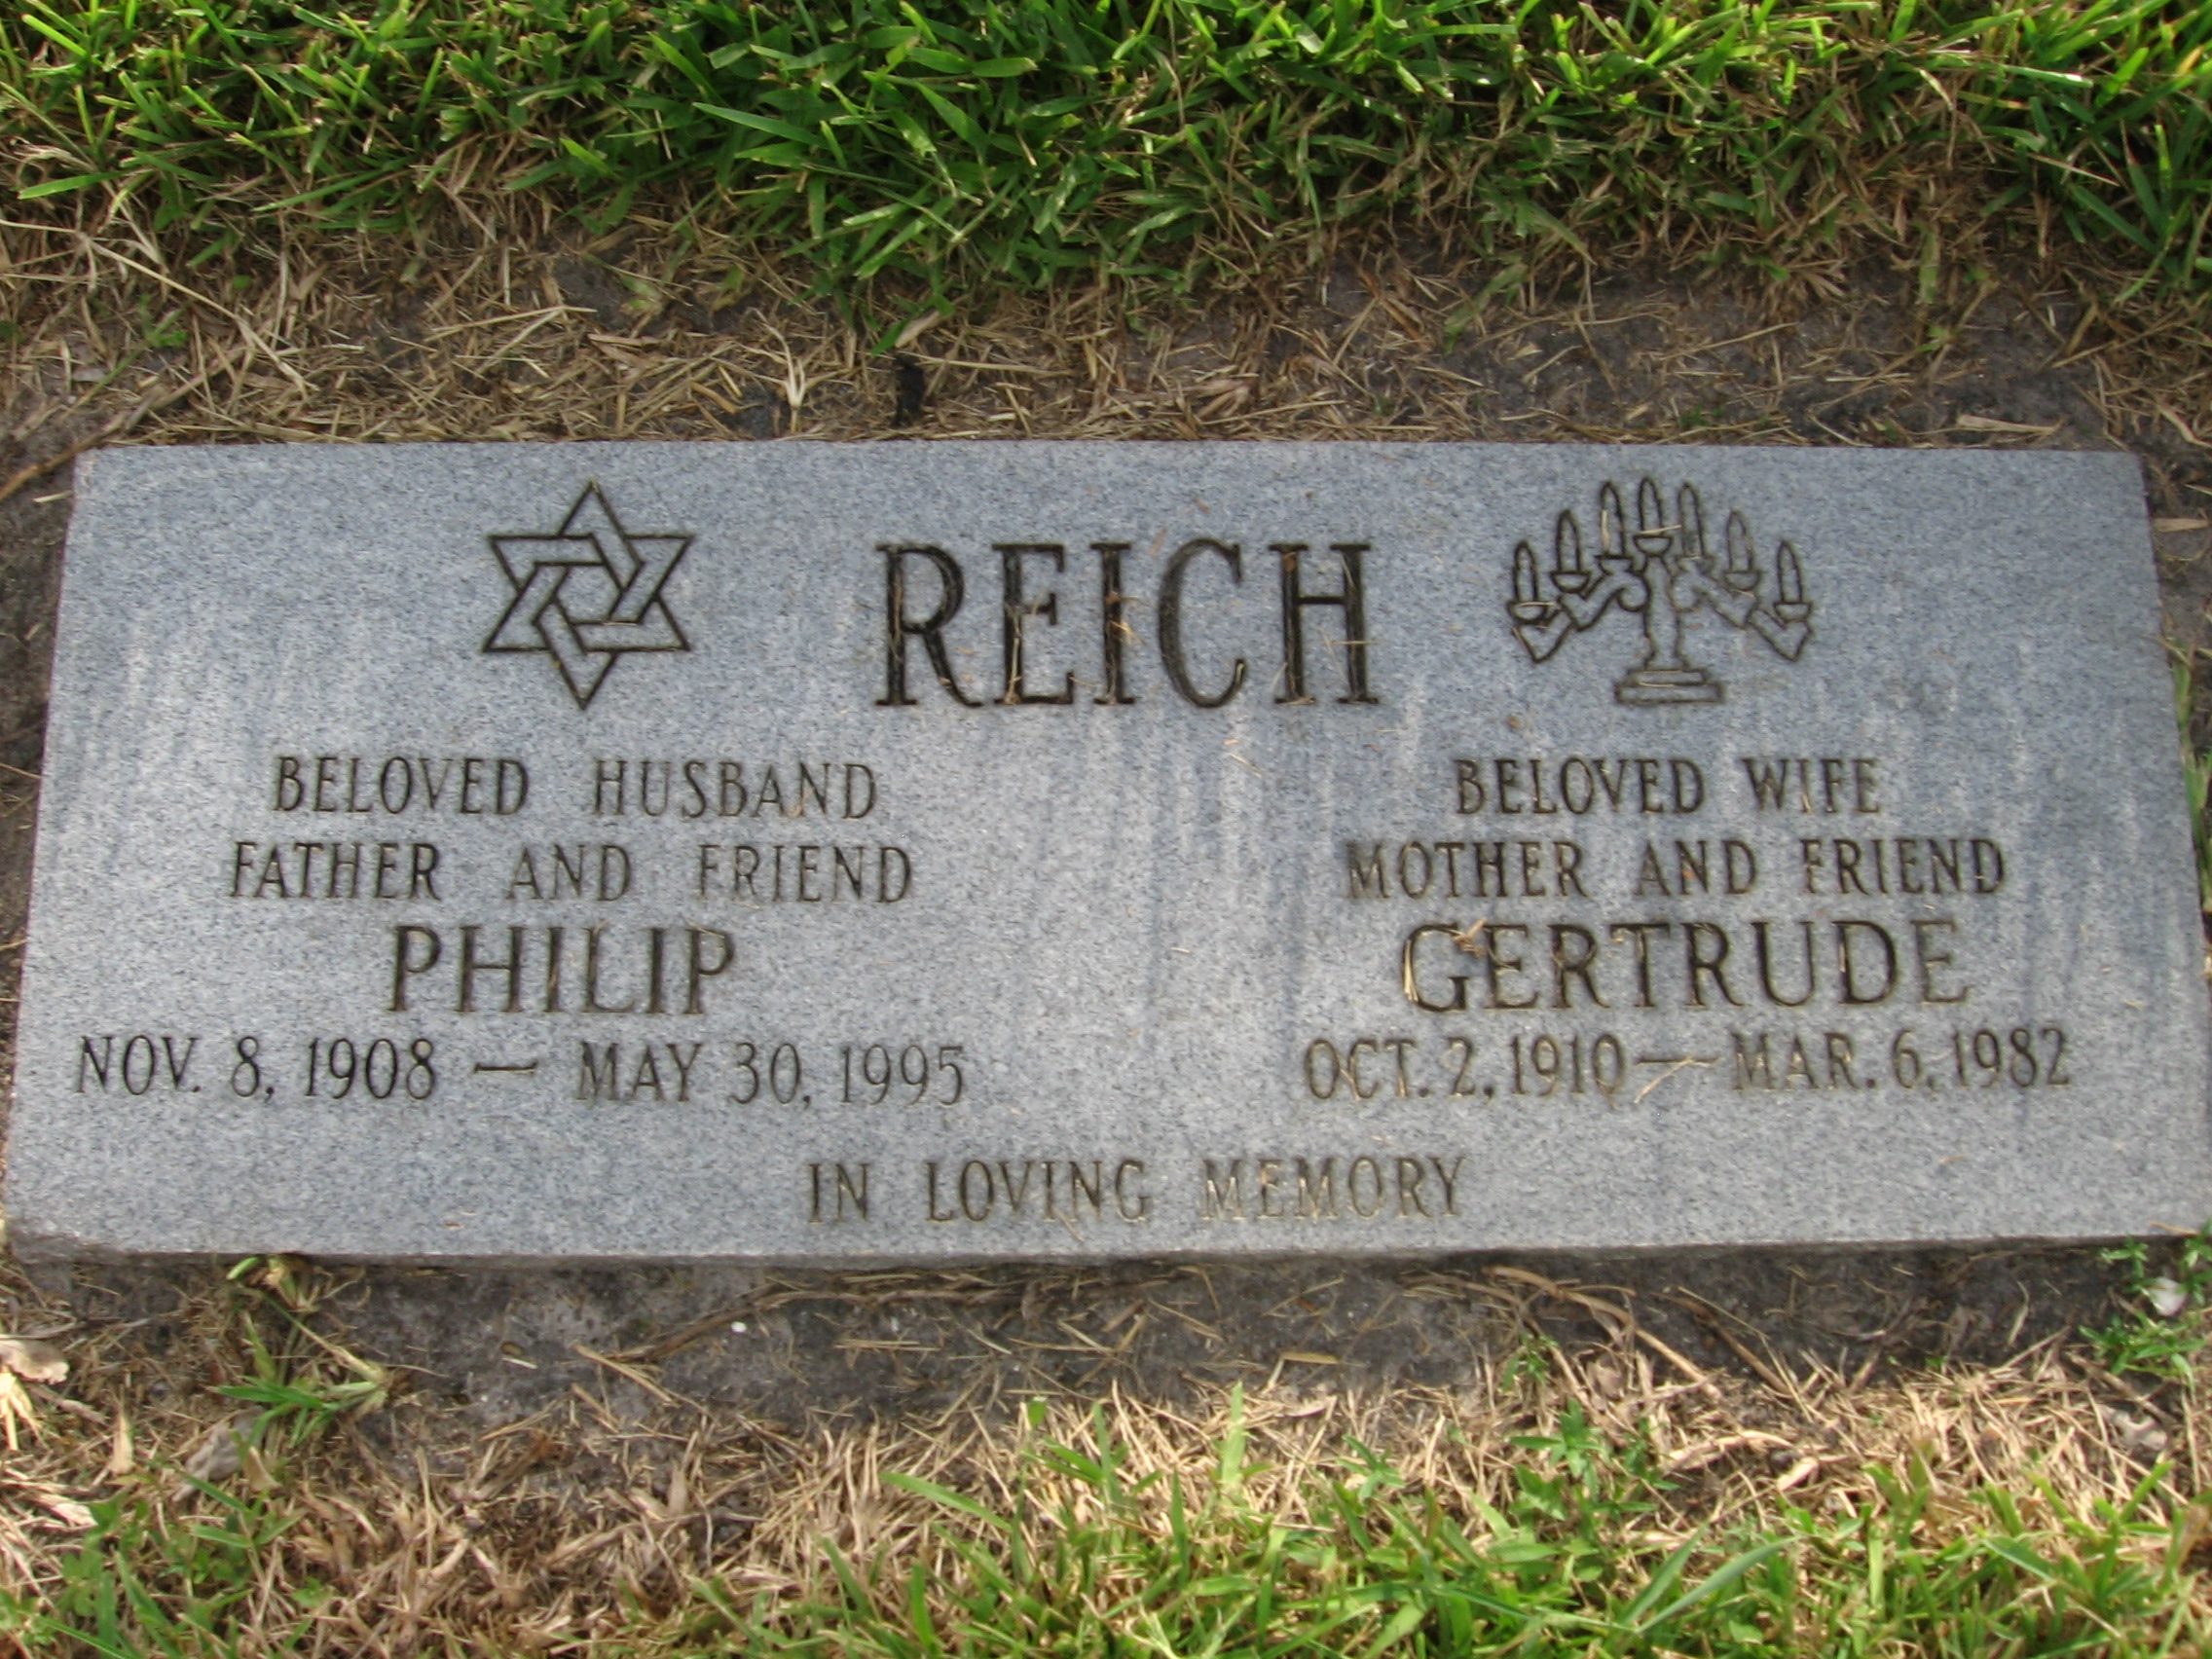 Philip Reich